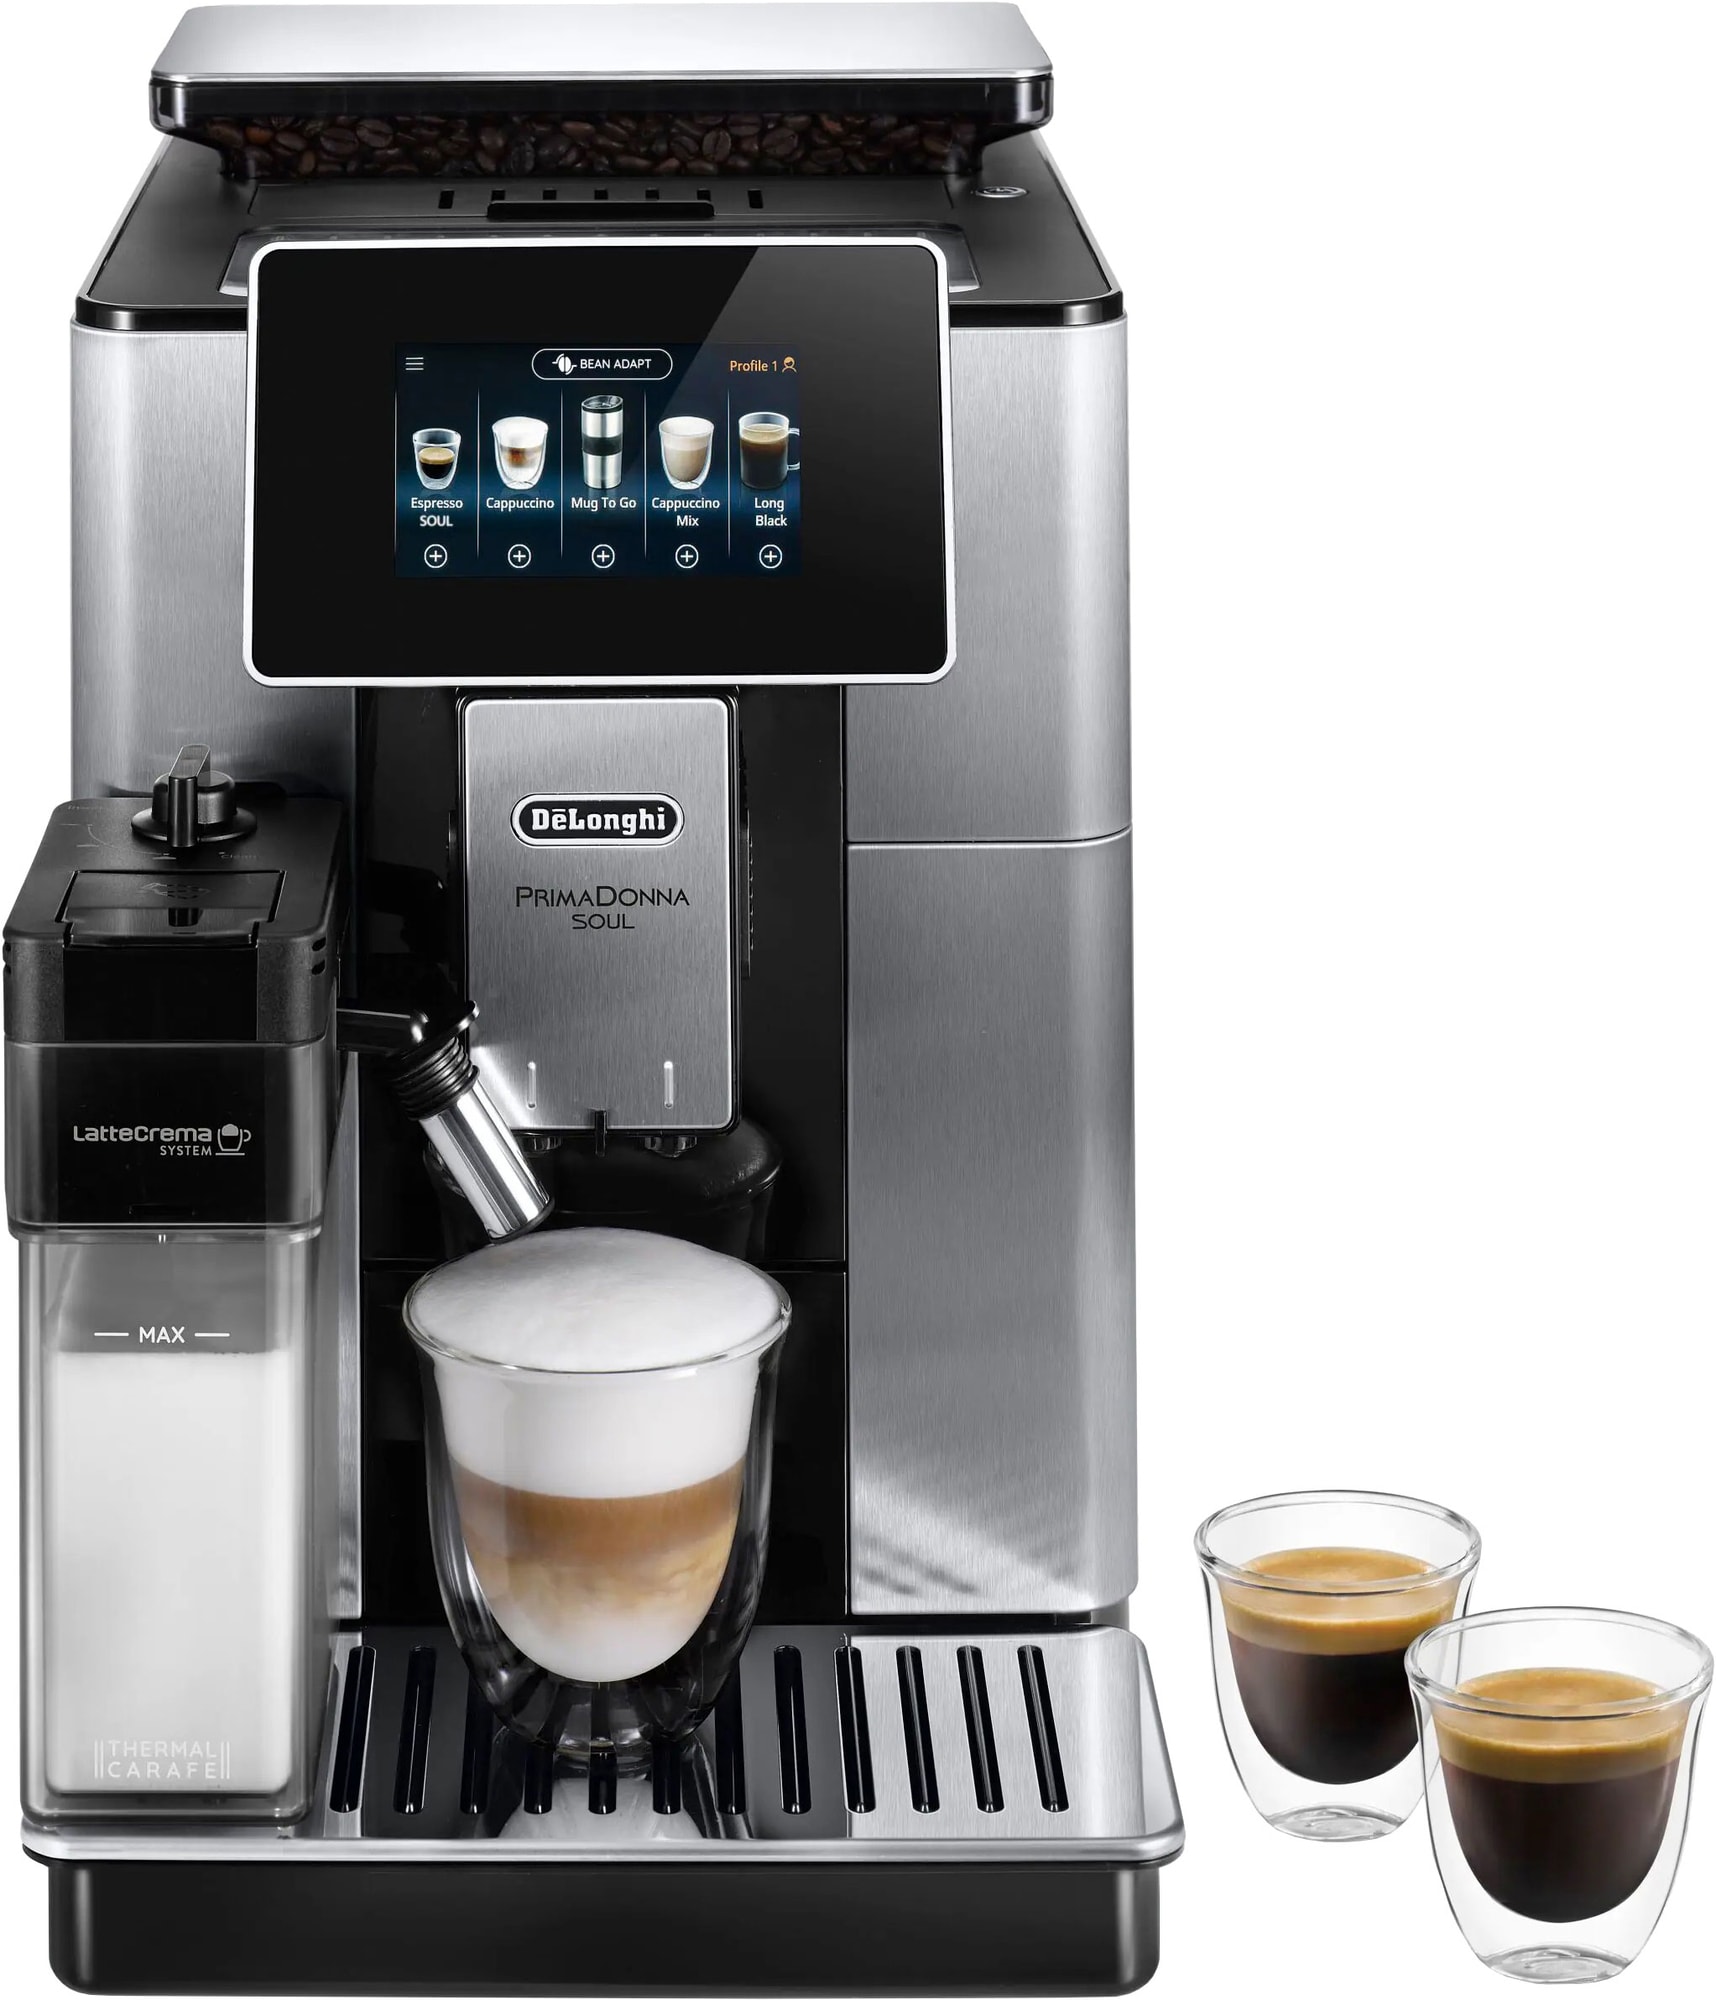 Bedste PrimaDonna Kaffemaskine i 2023